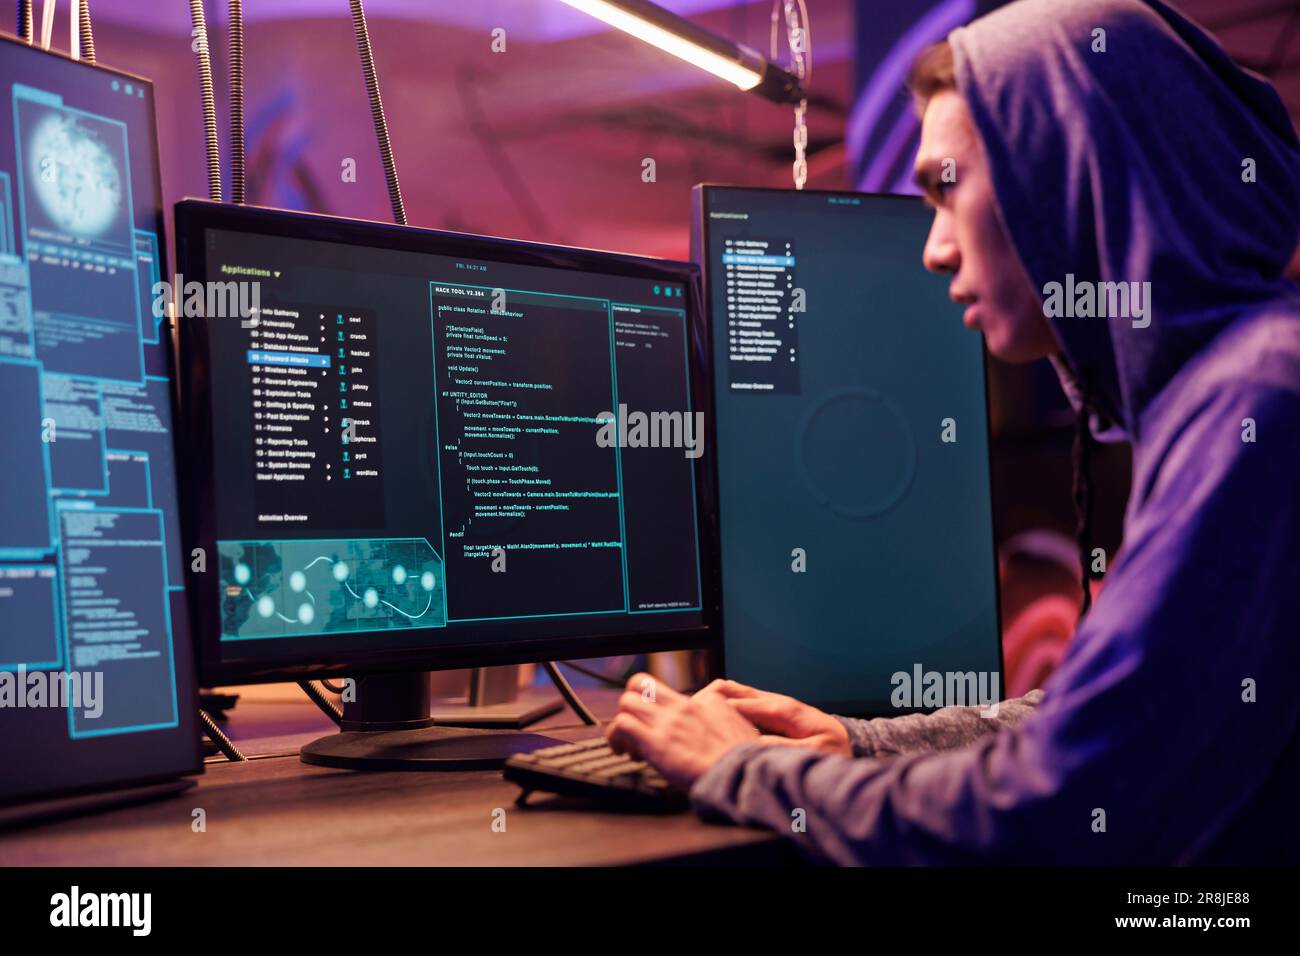 Asiatischer Hacker greift Server mit Ransomware an und knackt das Passwort. Internetbetrug bei Hood plant Phishing-Angriffe und entwickelt schädliche Software, um Daten in dunklen Räumen zu missbrauchen Stockfoto